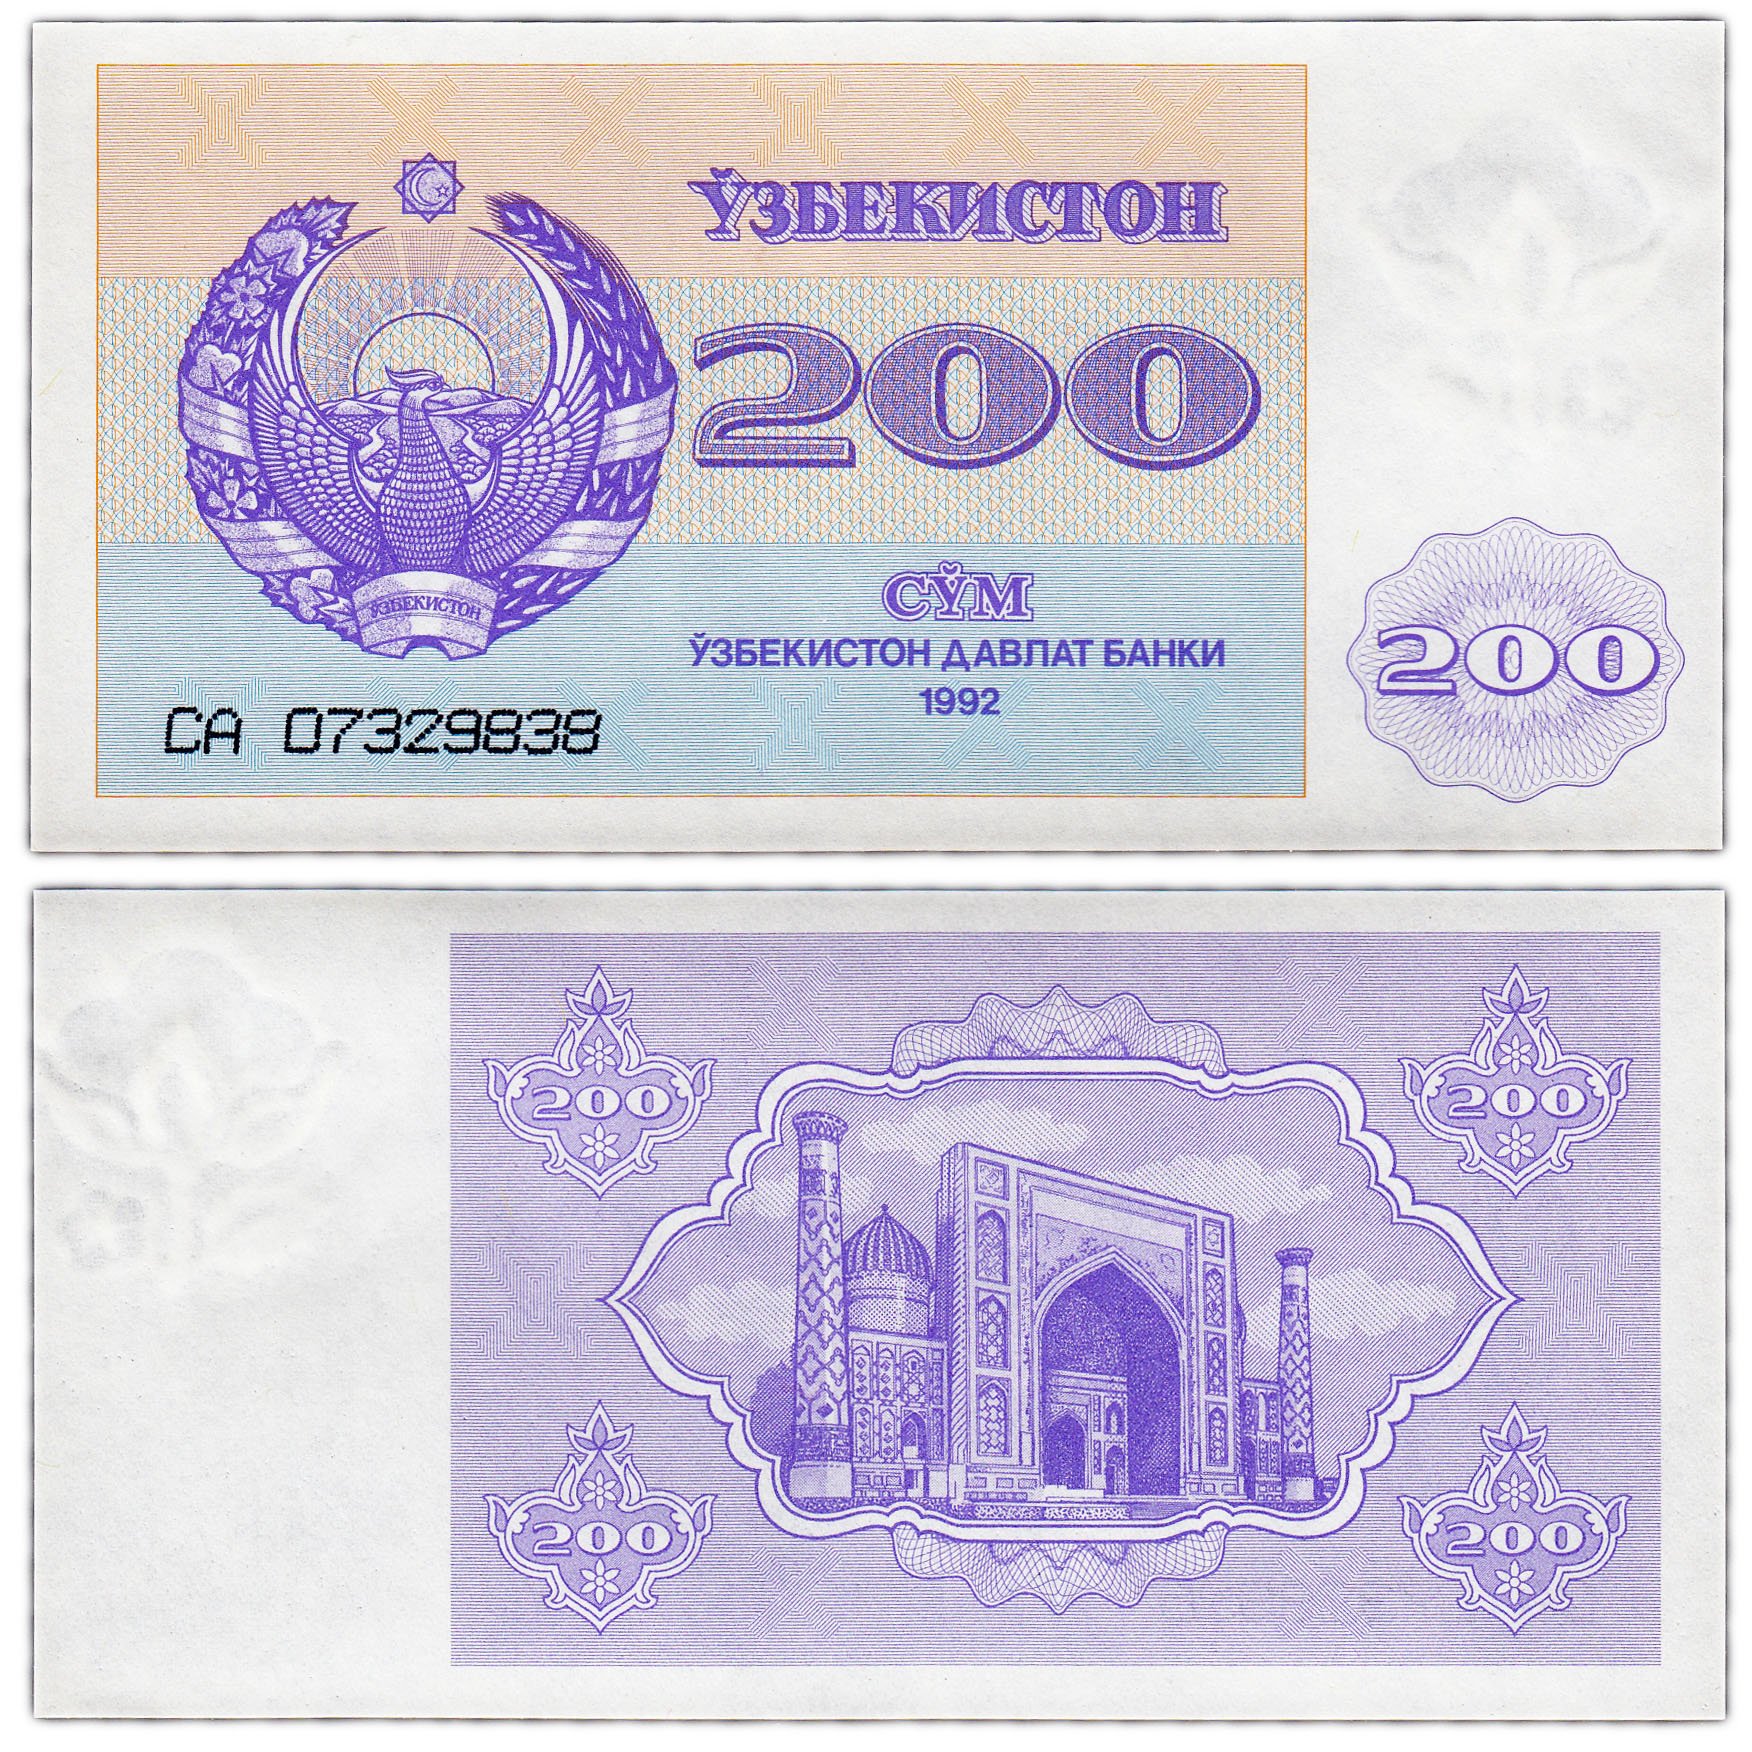 Сум купюра. Купюра 200 сум Узбекистан. Узбекистан: 200 сумов 1992 г.. Узбекский купюры 200 сум. Банкнот 5000 сум Узбекистан 1992.